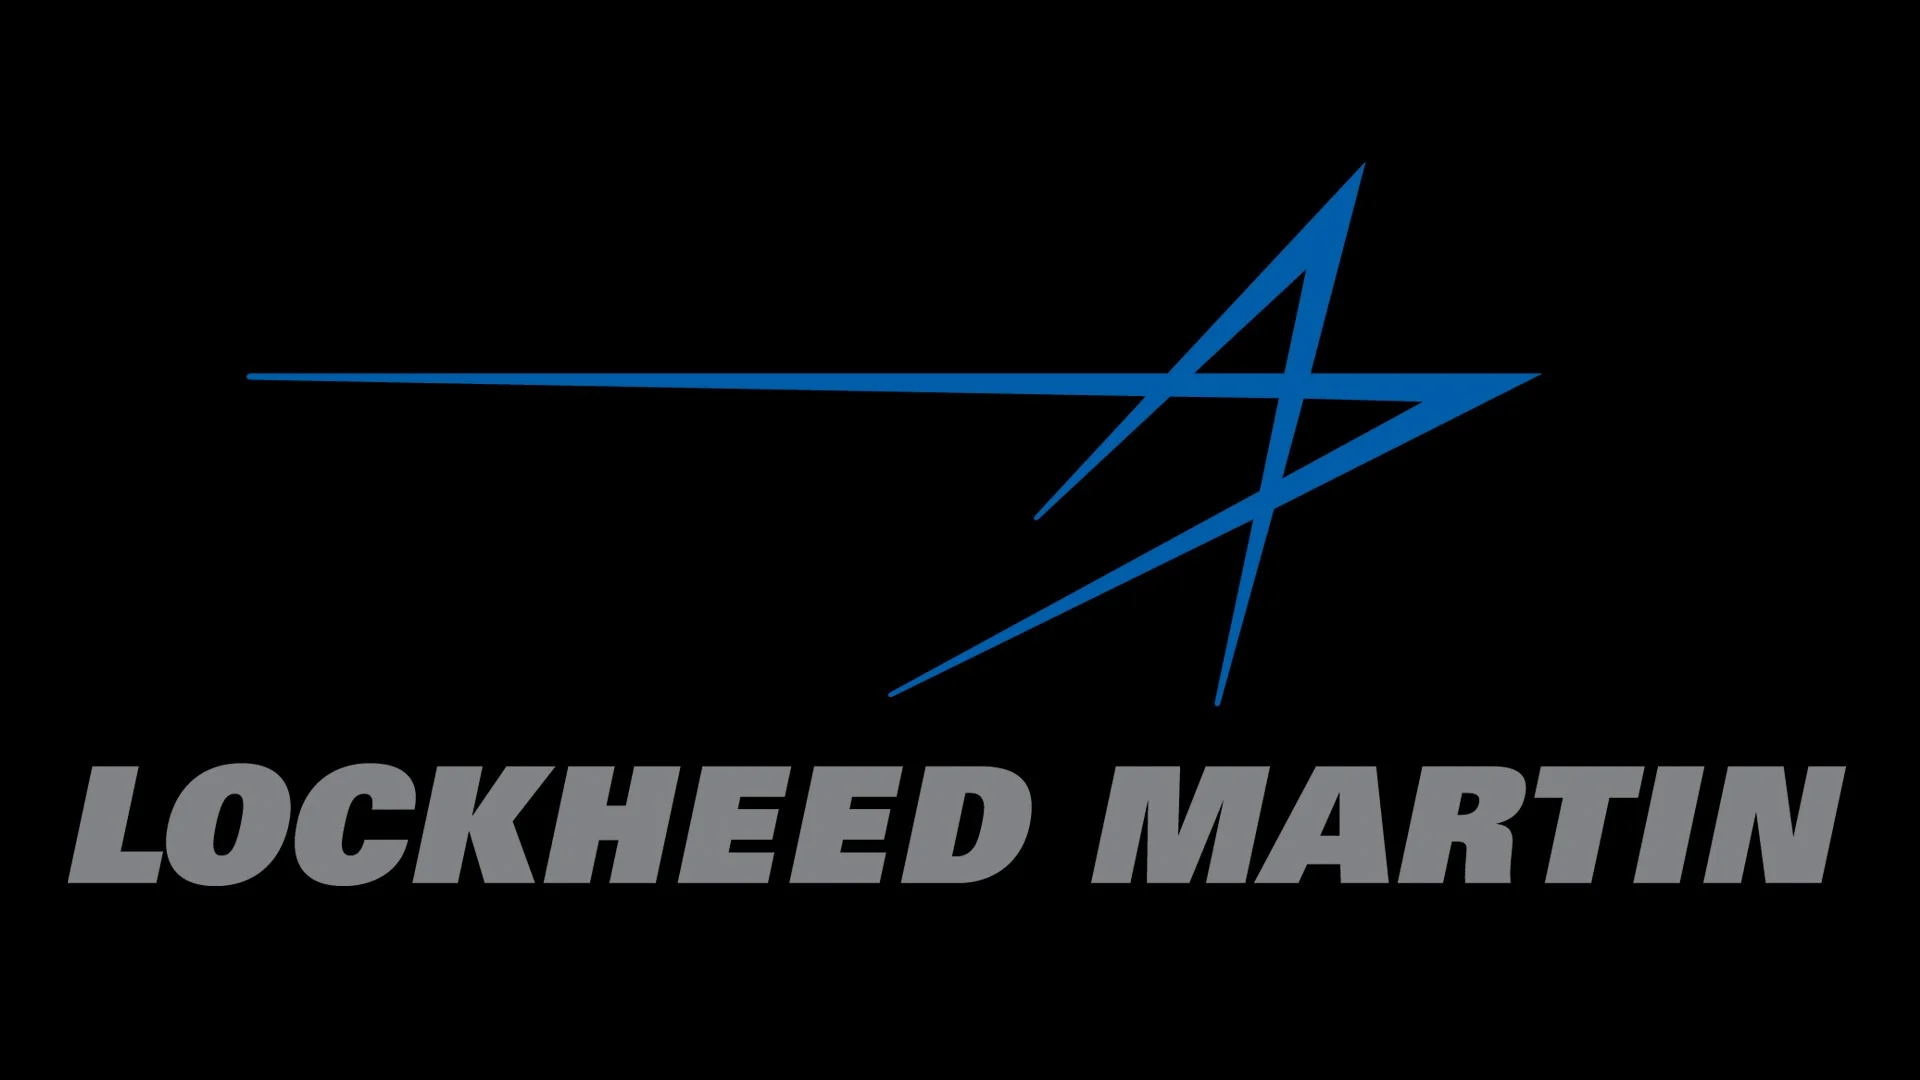 Yếu tố giúp cổ phiếu Lockheed Martin tỏa sáng trước ngày chia cổ tức